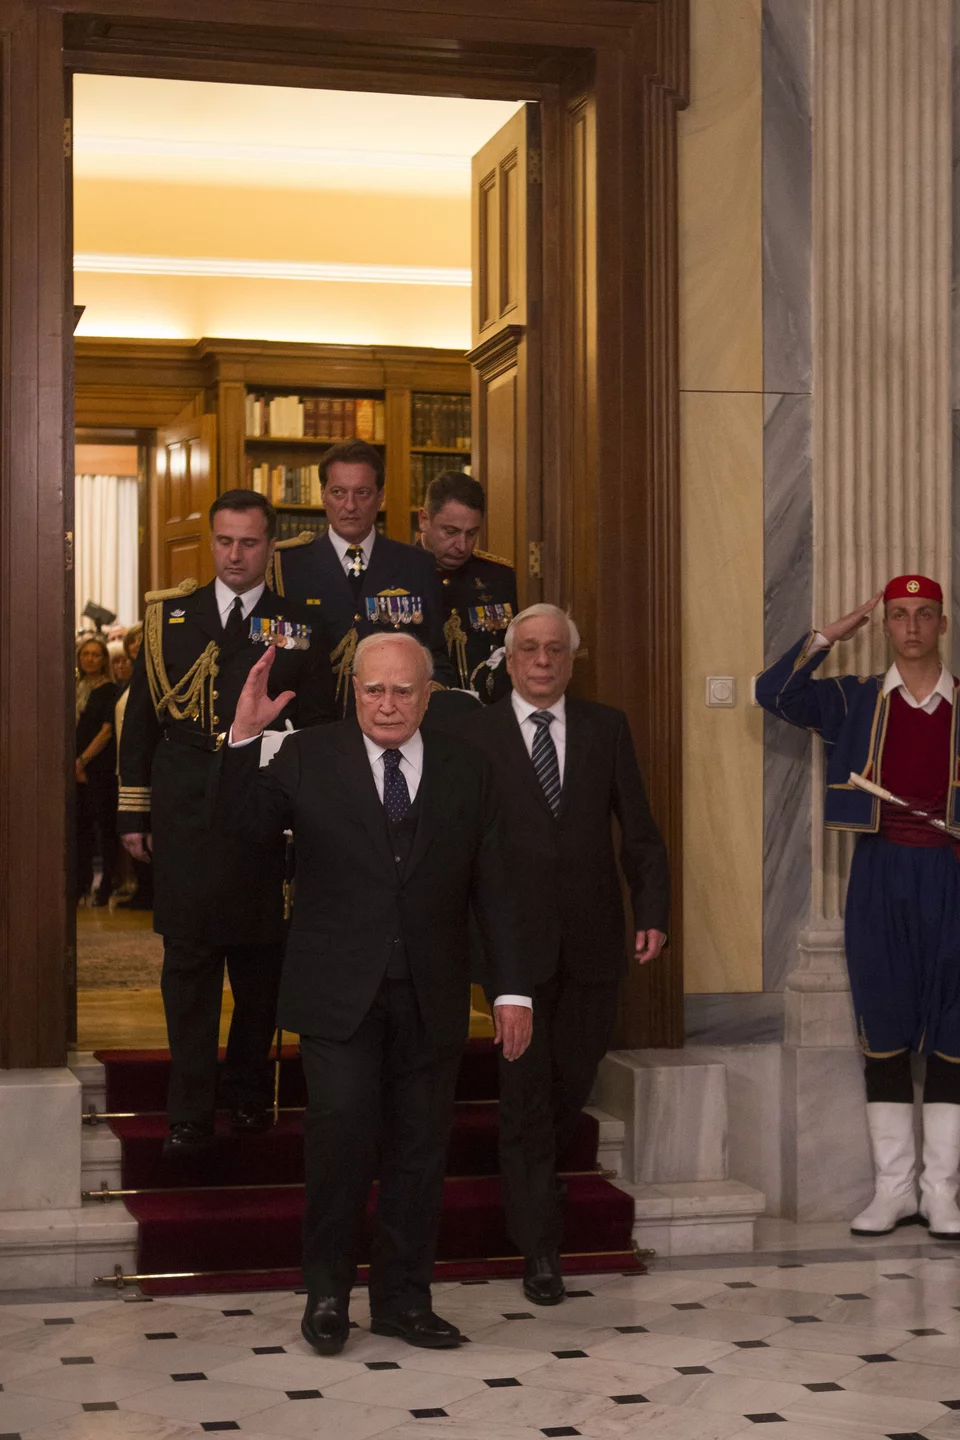 Το αντίο του Κάρολου Παπούλια στο προεδρικό μέγαρο, κατά την ανάληψη καθηκόντων από τον Προκόπη Παυλόπουλο, στις 14 Μαρτίου του 2015 / Φωτογραφία: EUROKINISSI